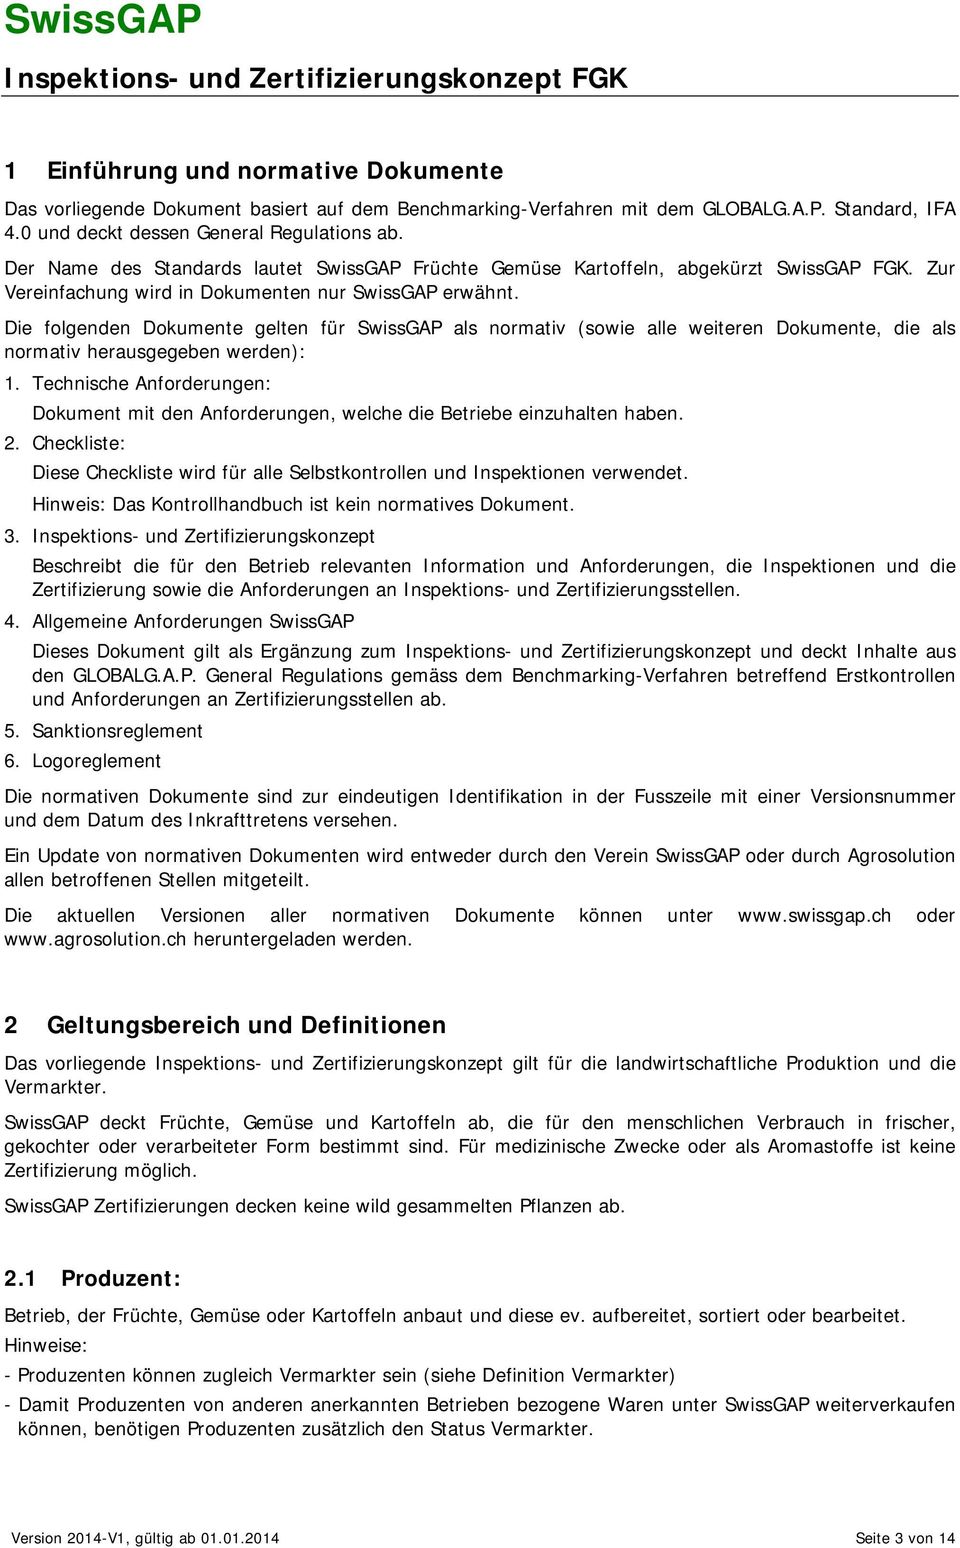 Die folgenden Dokumente gelten für SwissGAP als normativ (sowie alle weiteren Dokumente, die als normativ herausgegeben werden): 1.